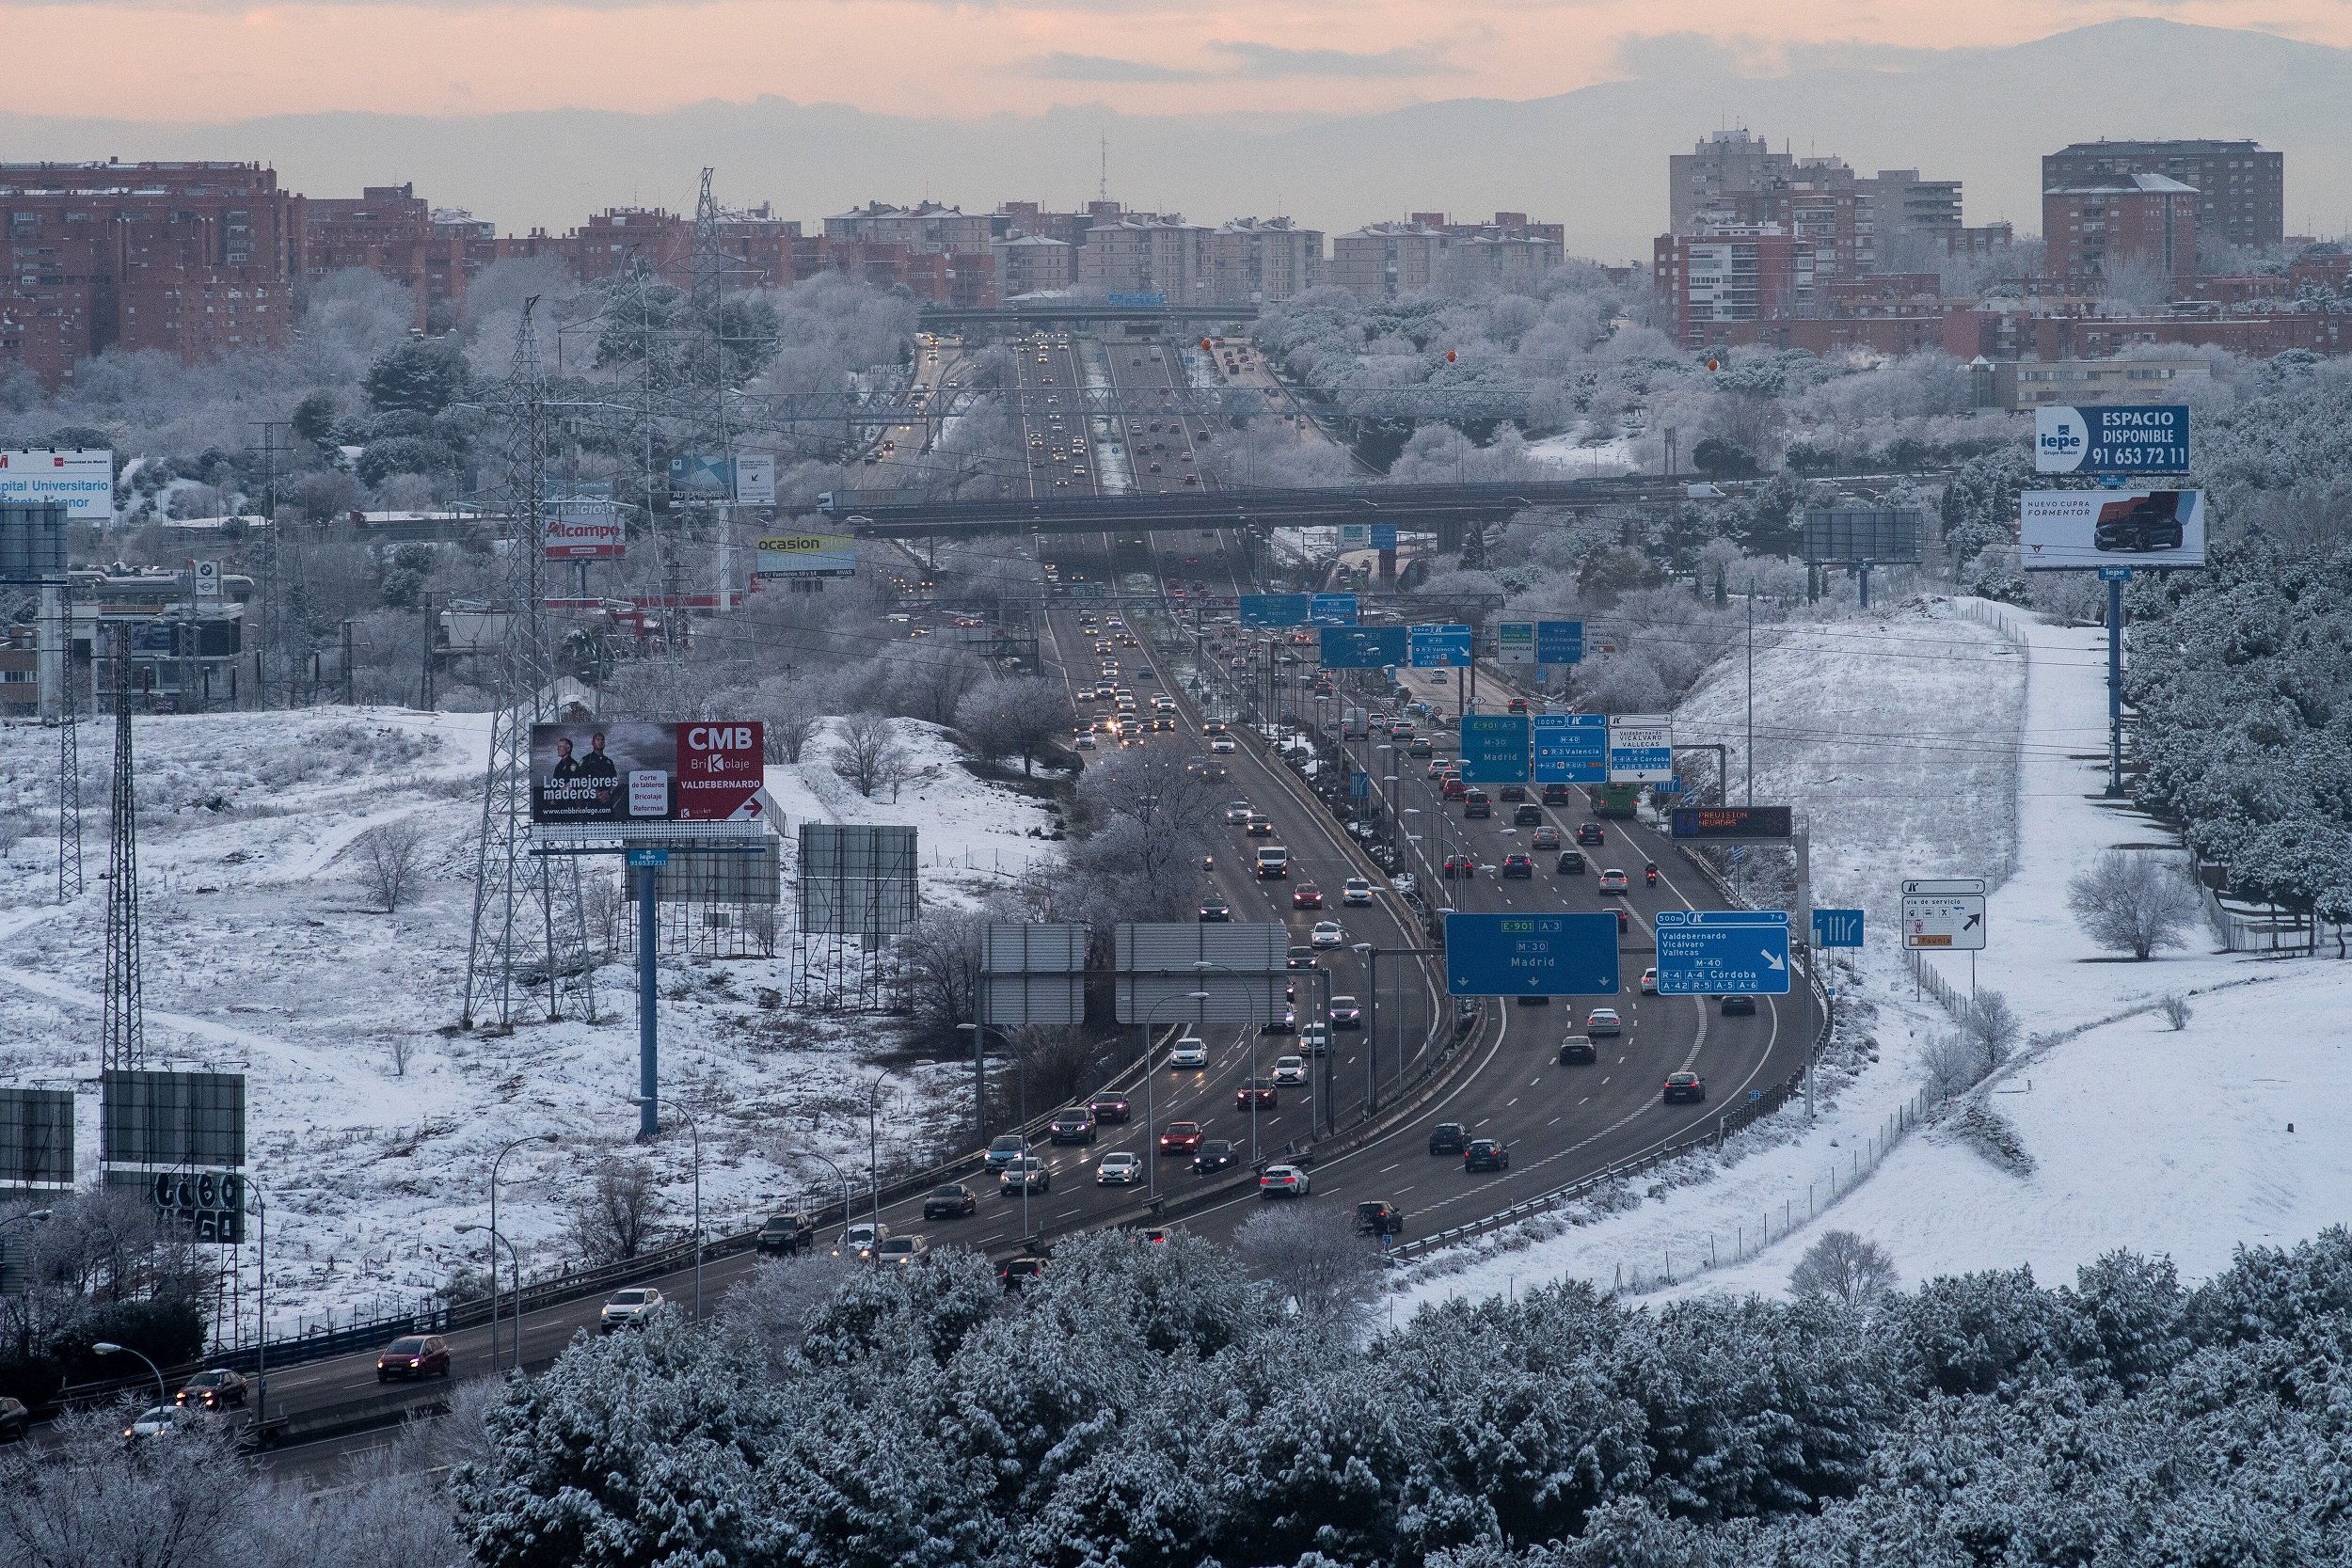 Tráfico en la autopista tras nevada en Madrid. | Foto: Getty Images